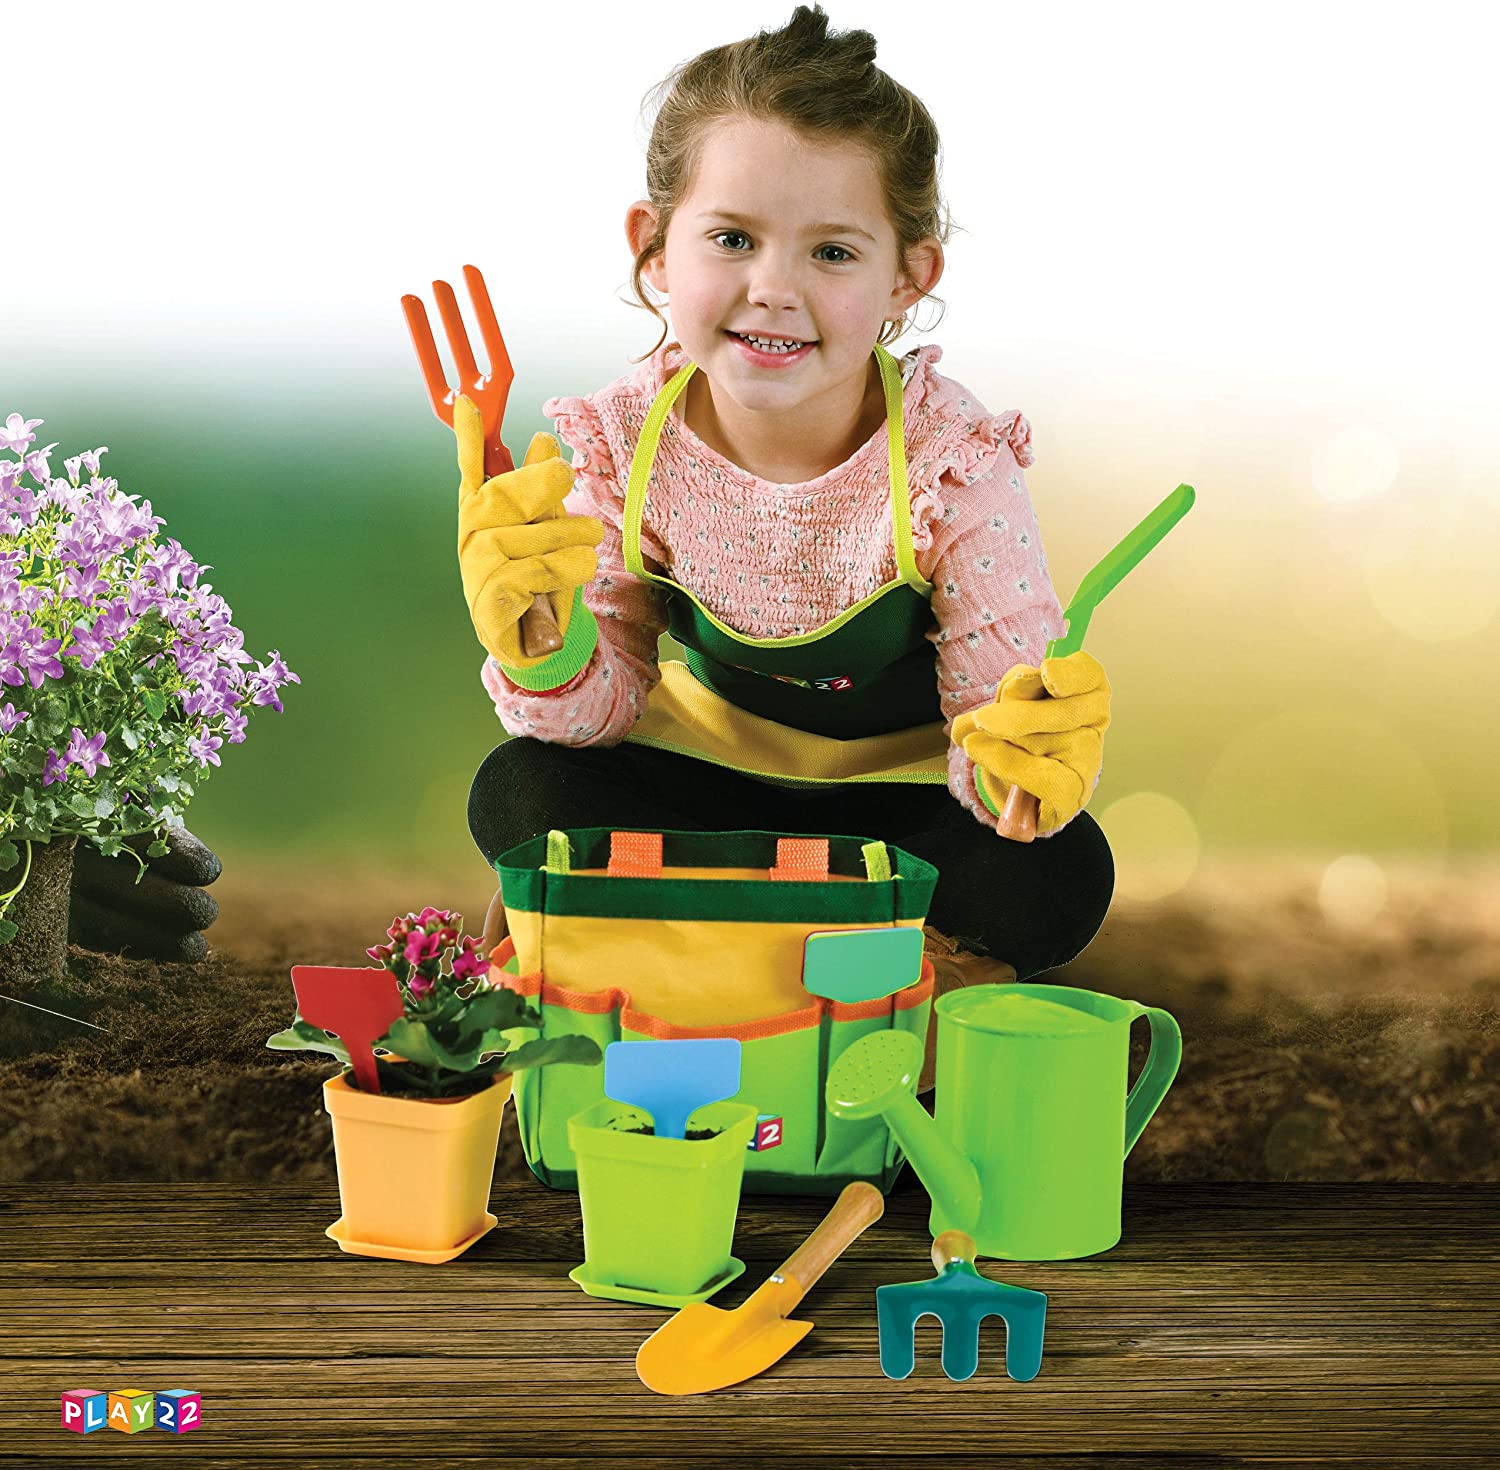 Play22 Kids Gardening Tool Set 12 PCS - Kids Gardening Tools